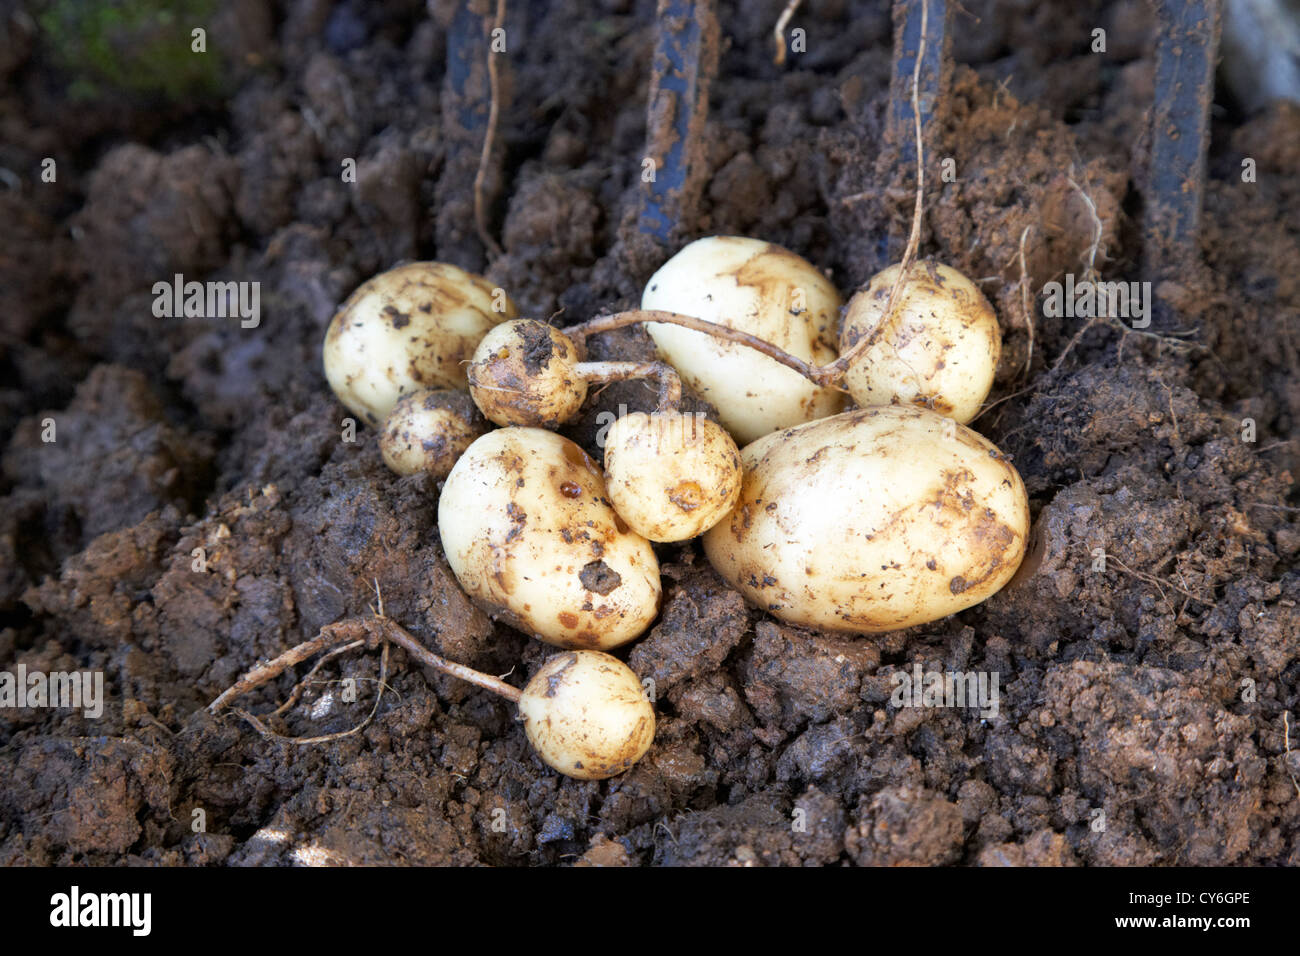 freshly dug up home grown misshapen potato crop in the uk Stock Photo